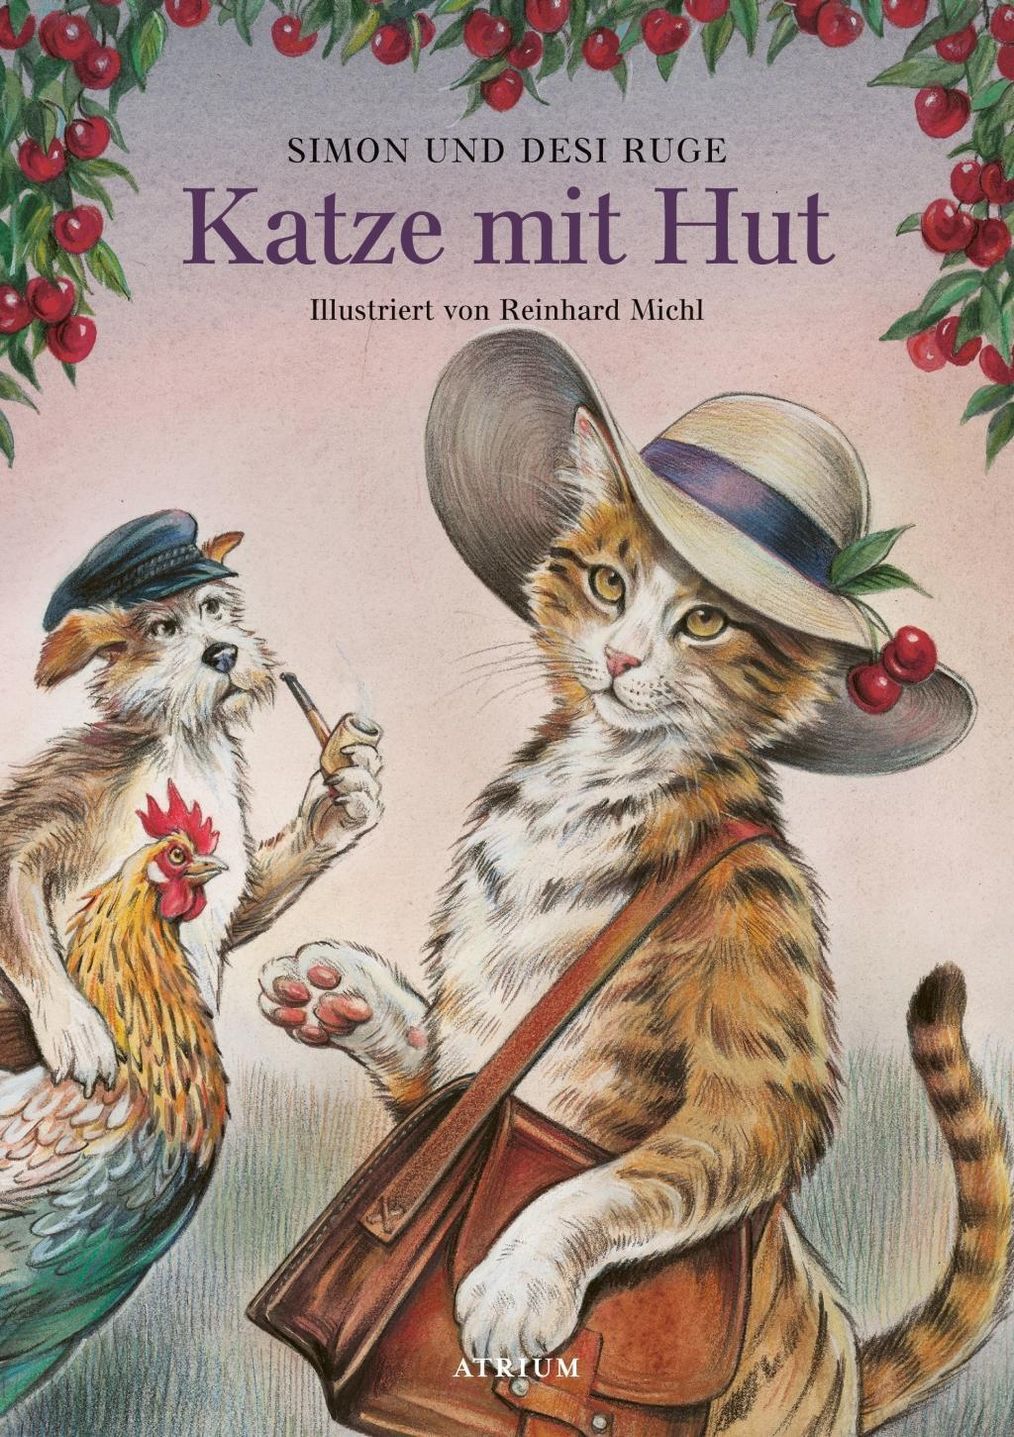 Katze mit Hut Buch von Desi Ruge versandkostenfrei bestellen - Weltbild.de